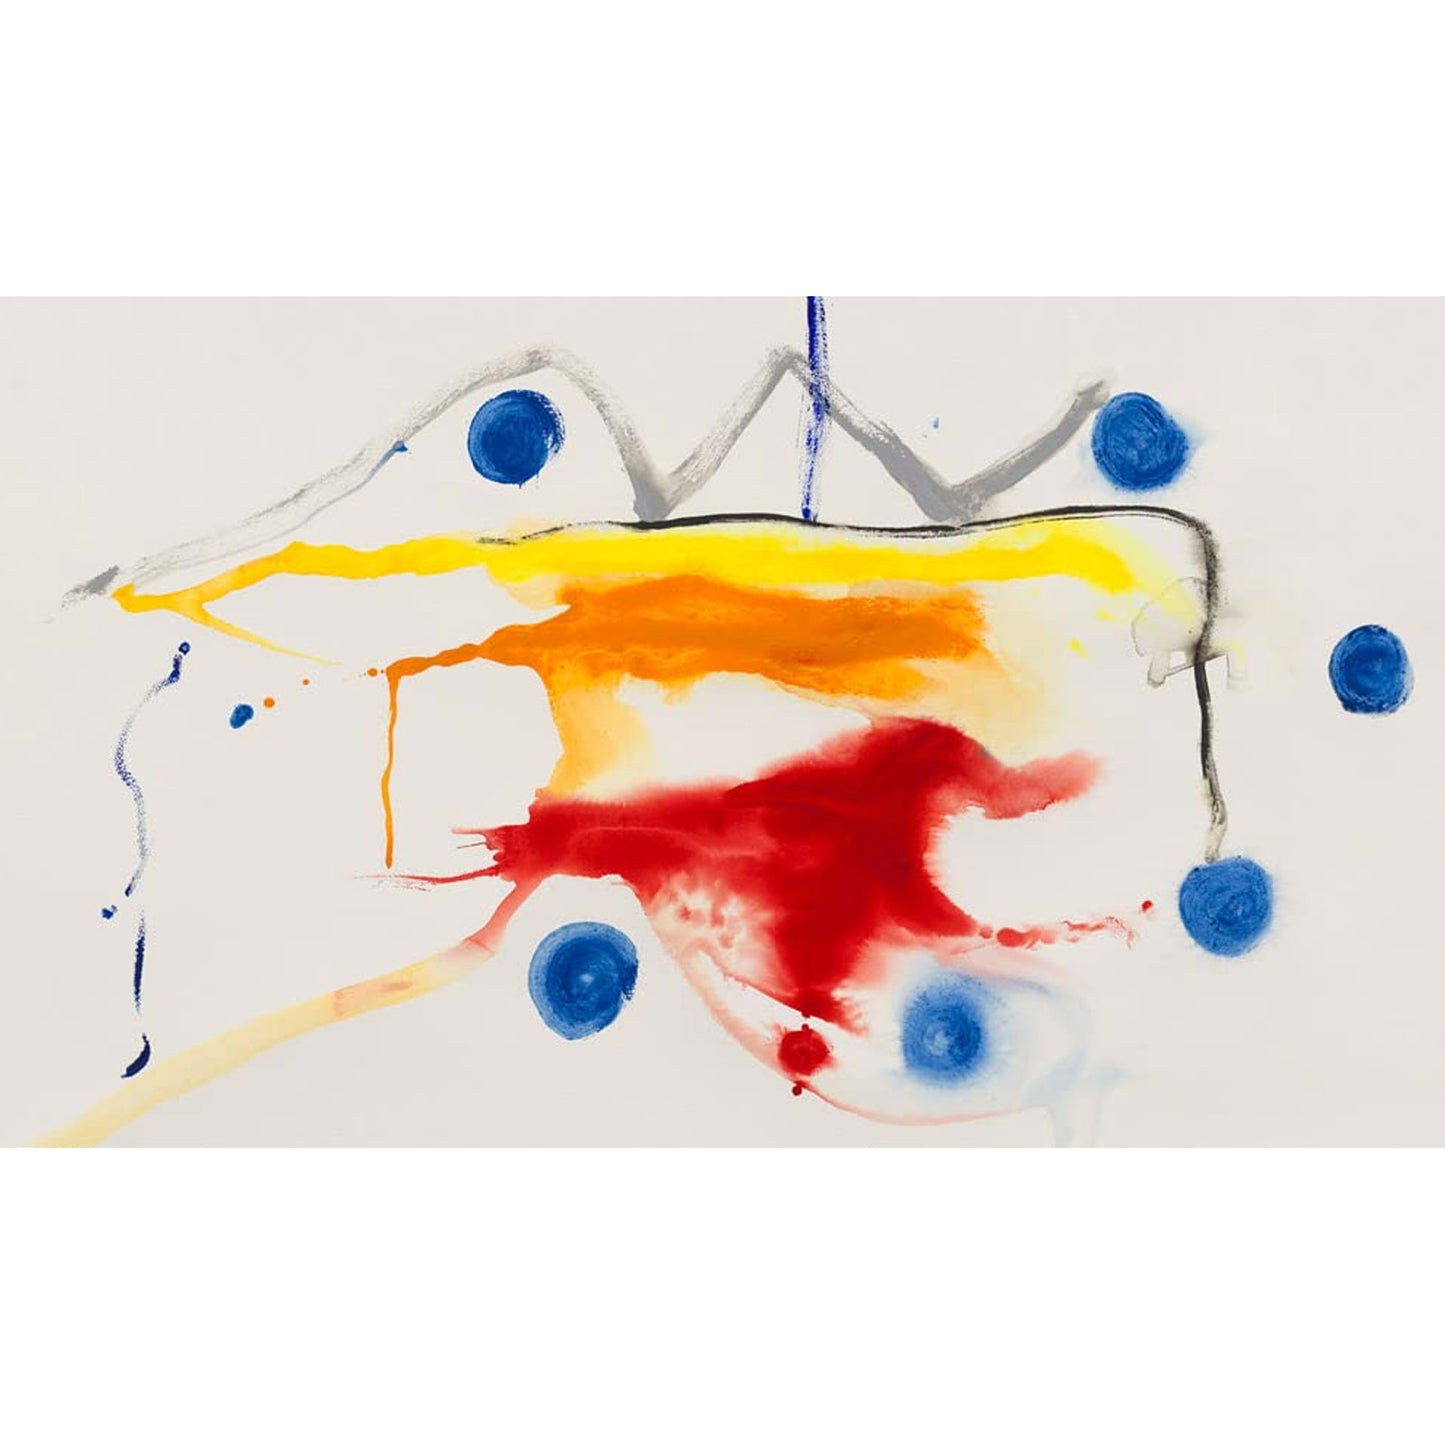 Helen Frankenthaler: Late Works, 1988 - 2009